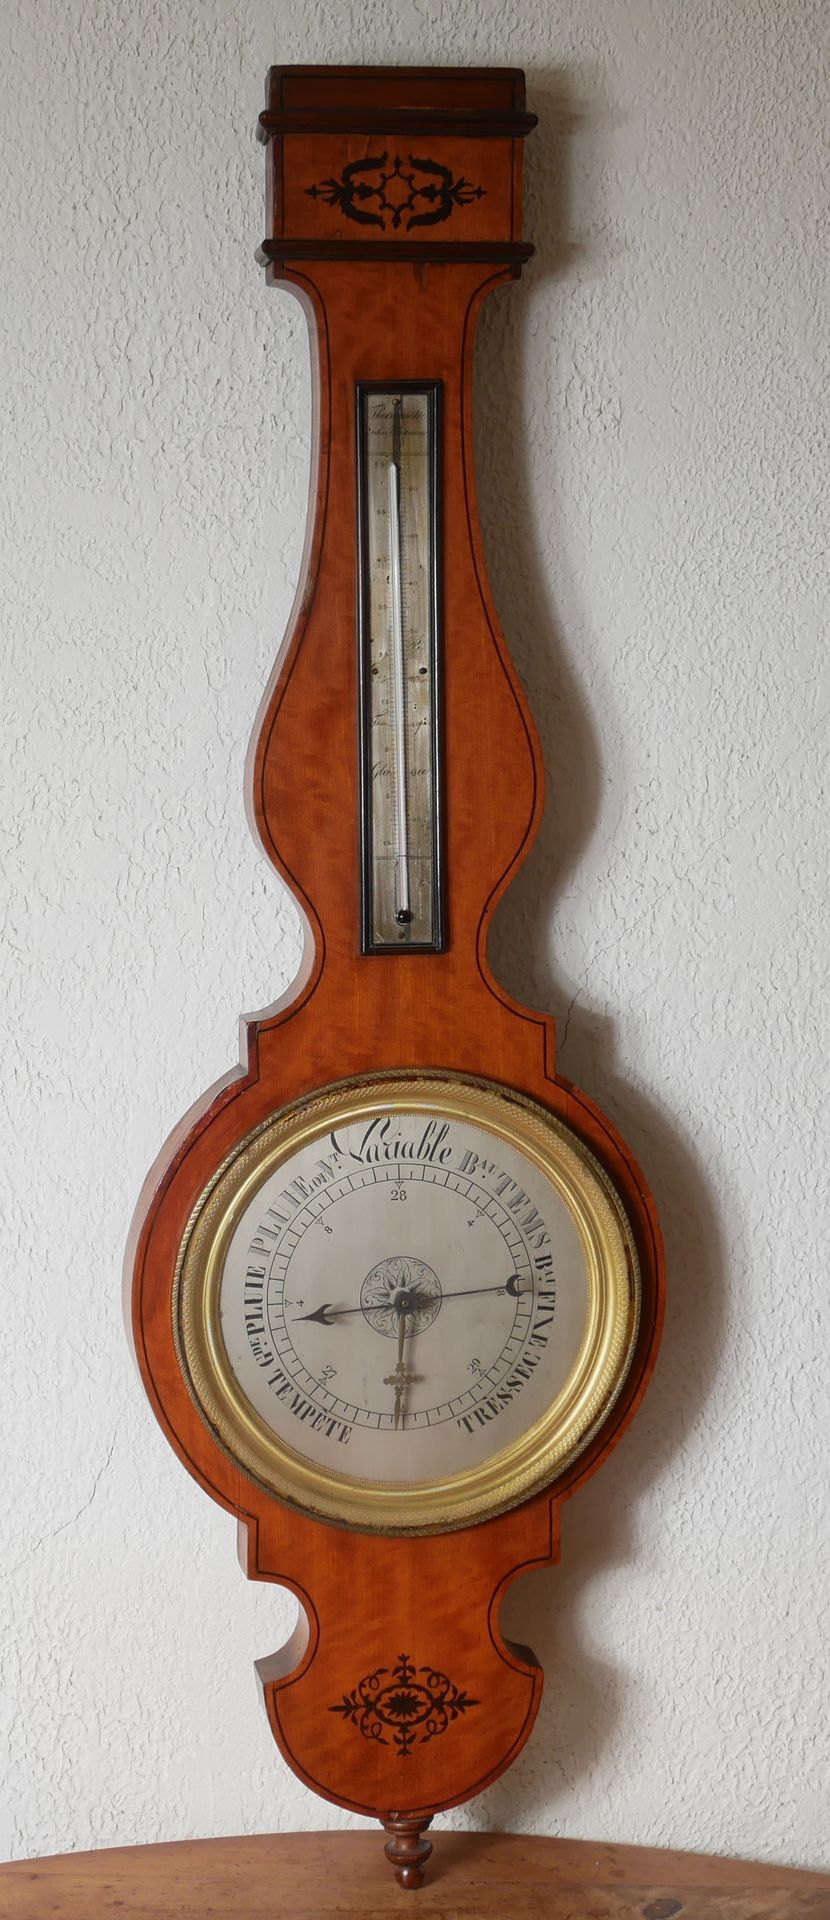 Null Barómetro-termómetro en chapa de madera

H: 103 cm (astillas, partes que fa&hellip;